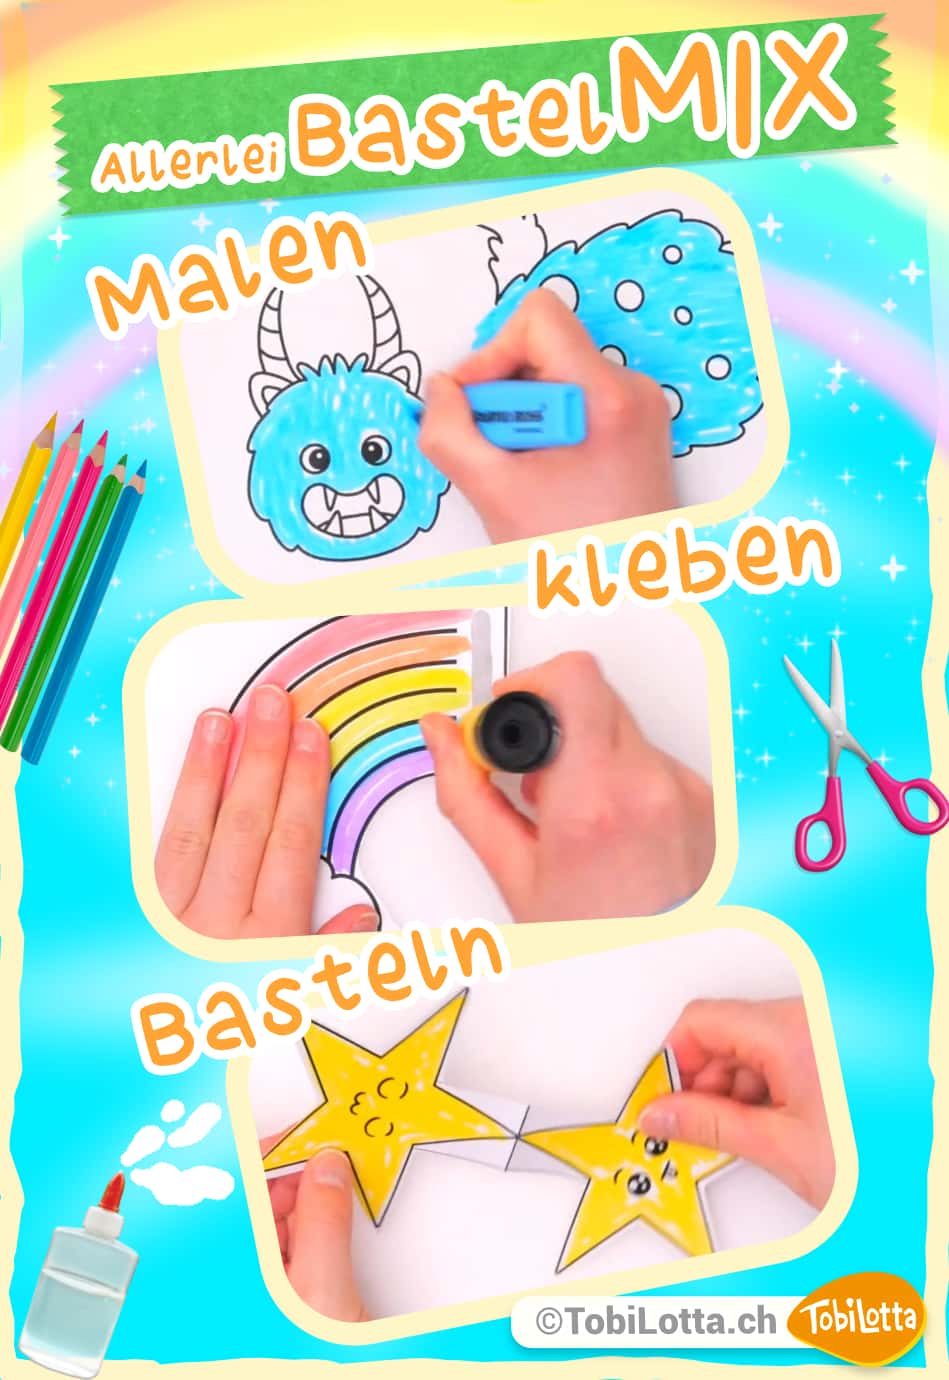 829997-3-Allerlei-Bastelmix-Basteln-mit-Kindern-Bastelvorlagen-Bastelvideos-fuer-Kinder